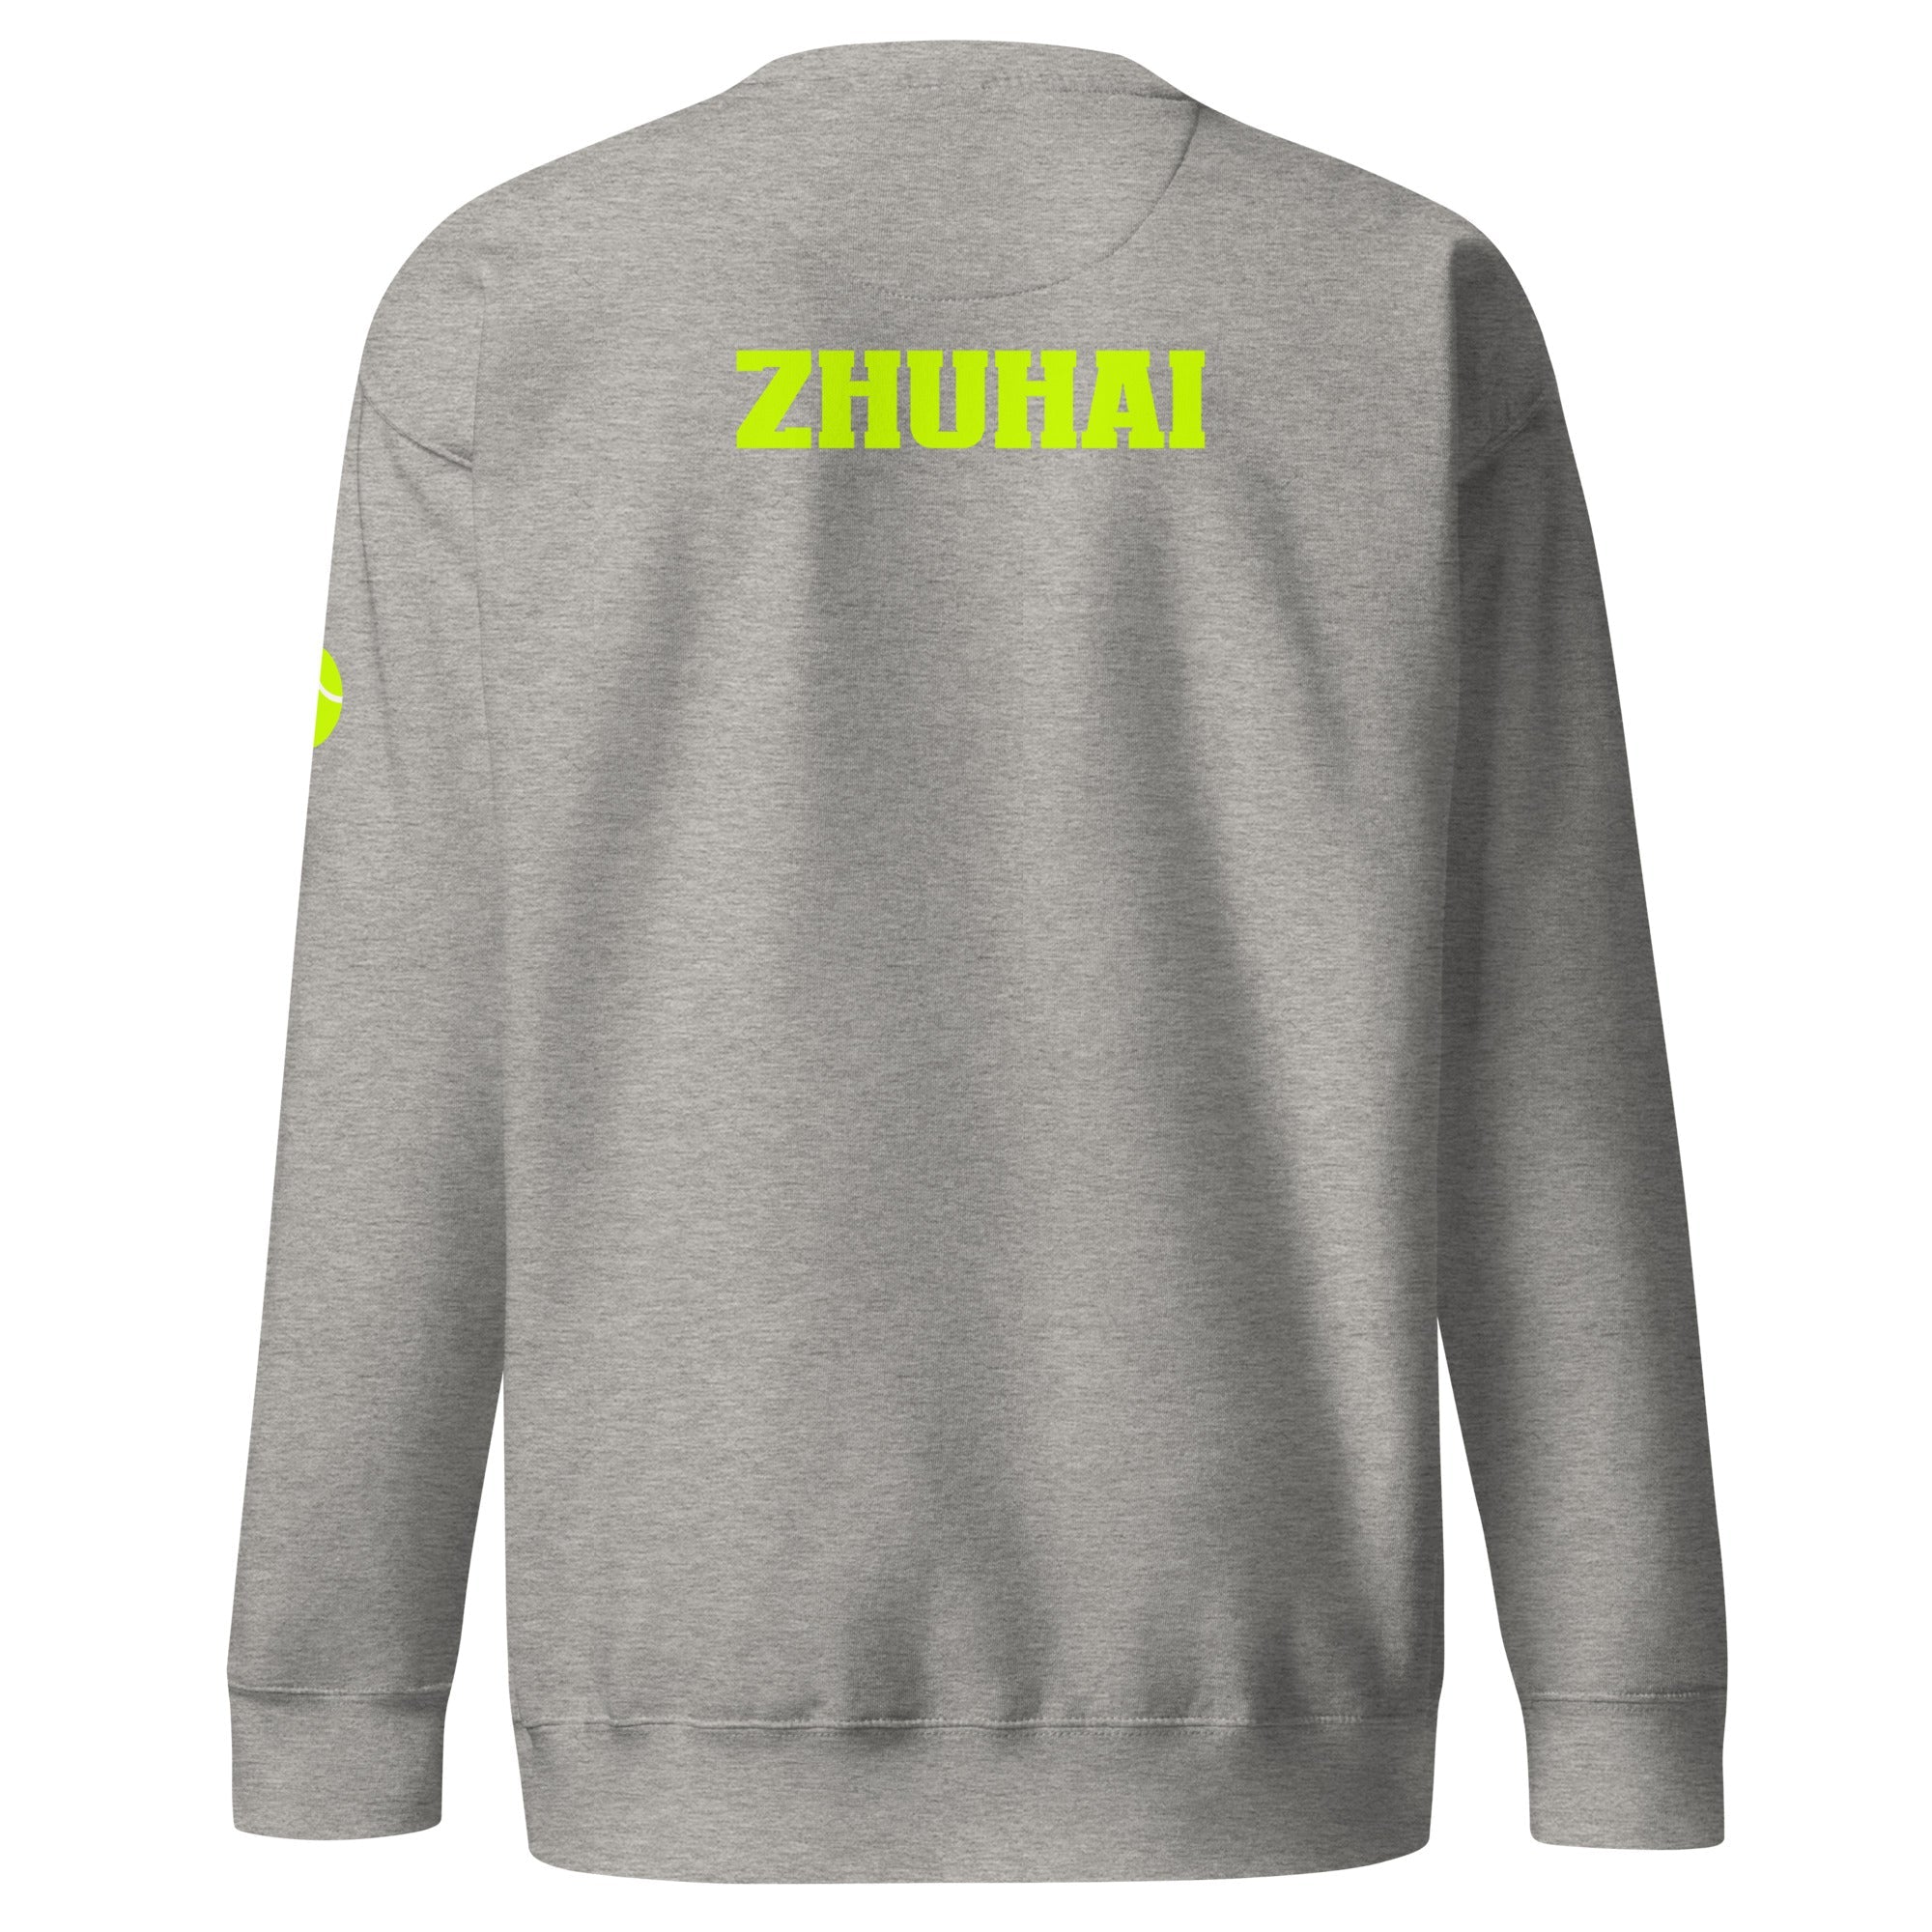 Unisex Premium Sweatshirt - Tennis Masters Zhuhai - GRAPHIC T-SHIRTS